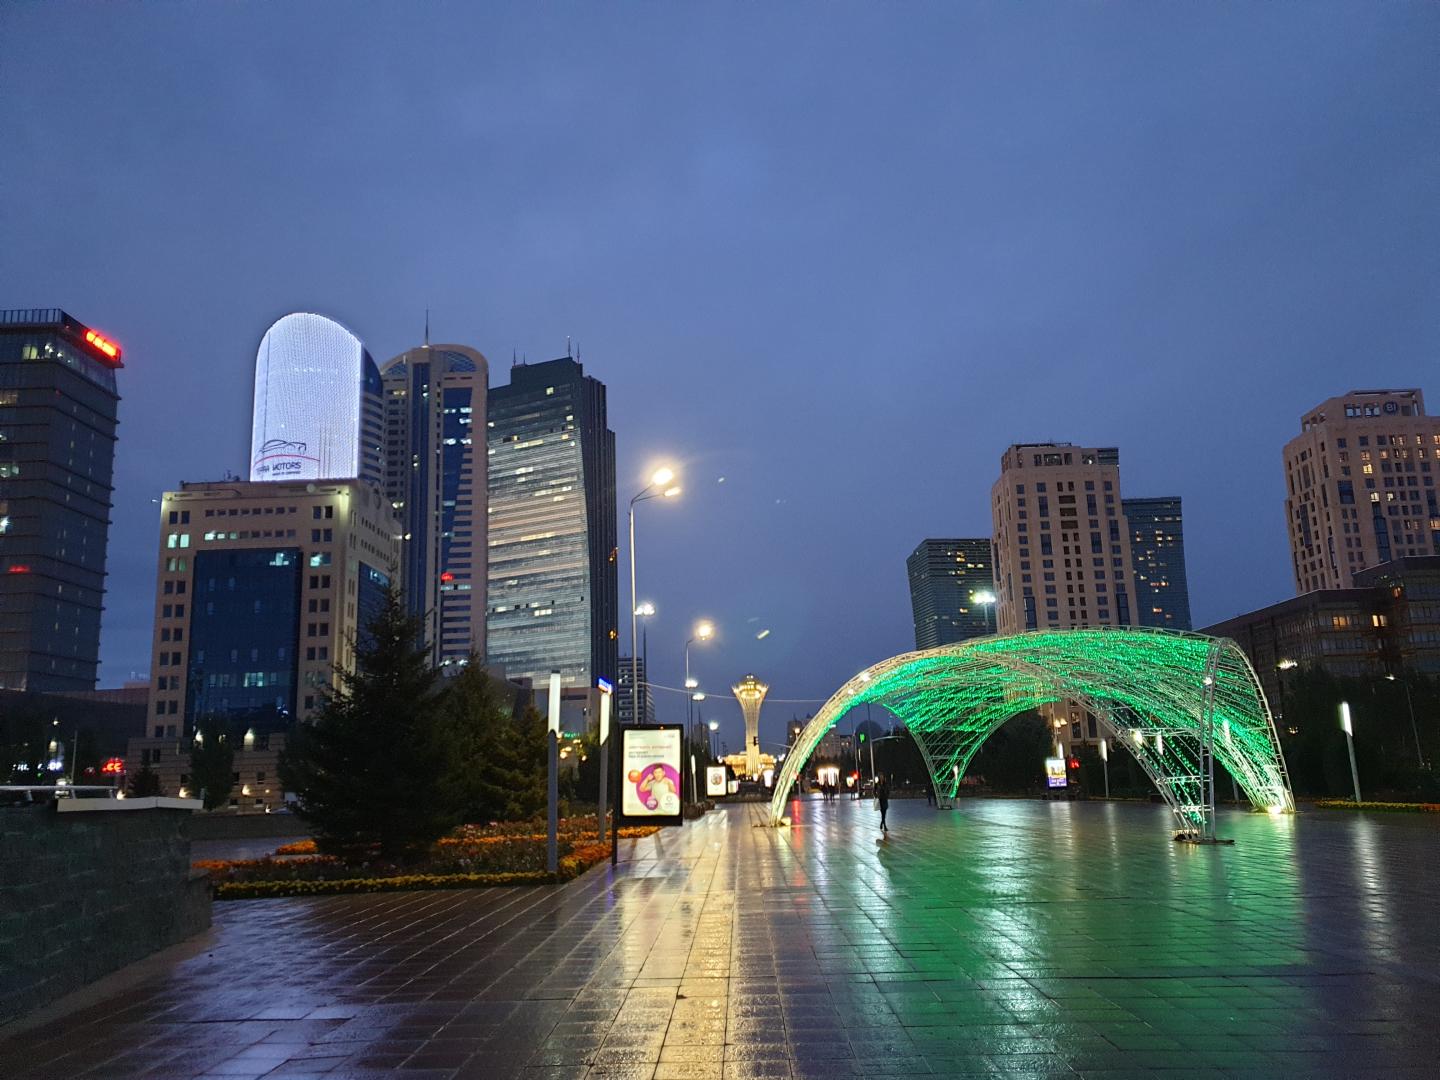 Photo: Peter Liebelt – Nur-Sultan City